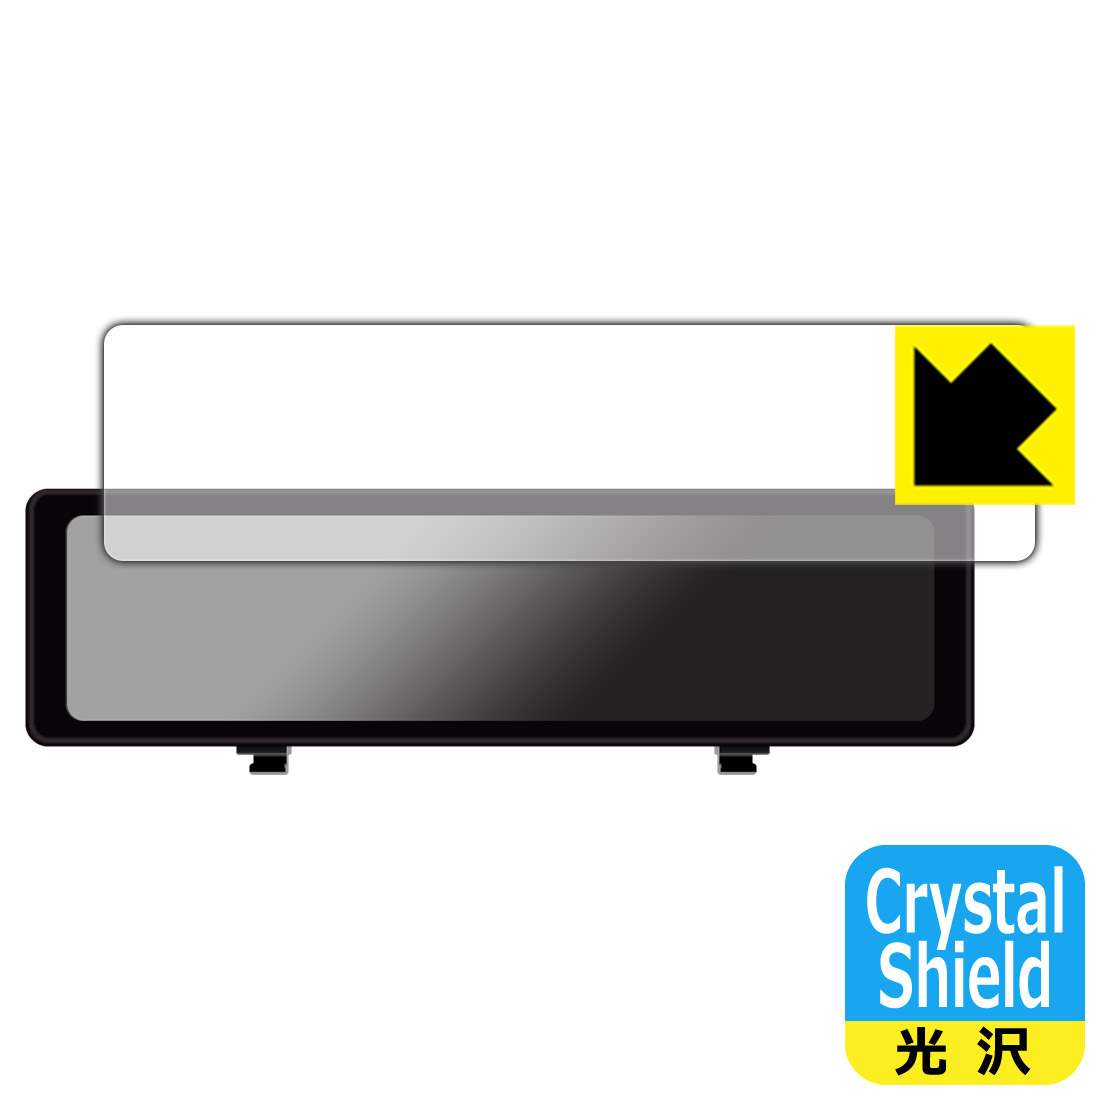 Crystal Shield保護フィルム HIGASHI デジタルルームミラー型ドライブレコーダー HM-031SL 日本製 自社製造直販